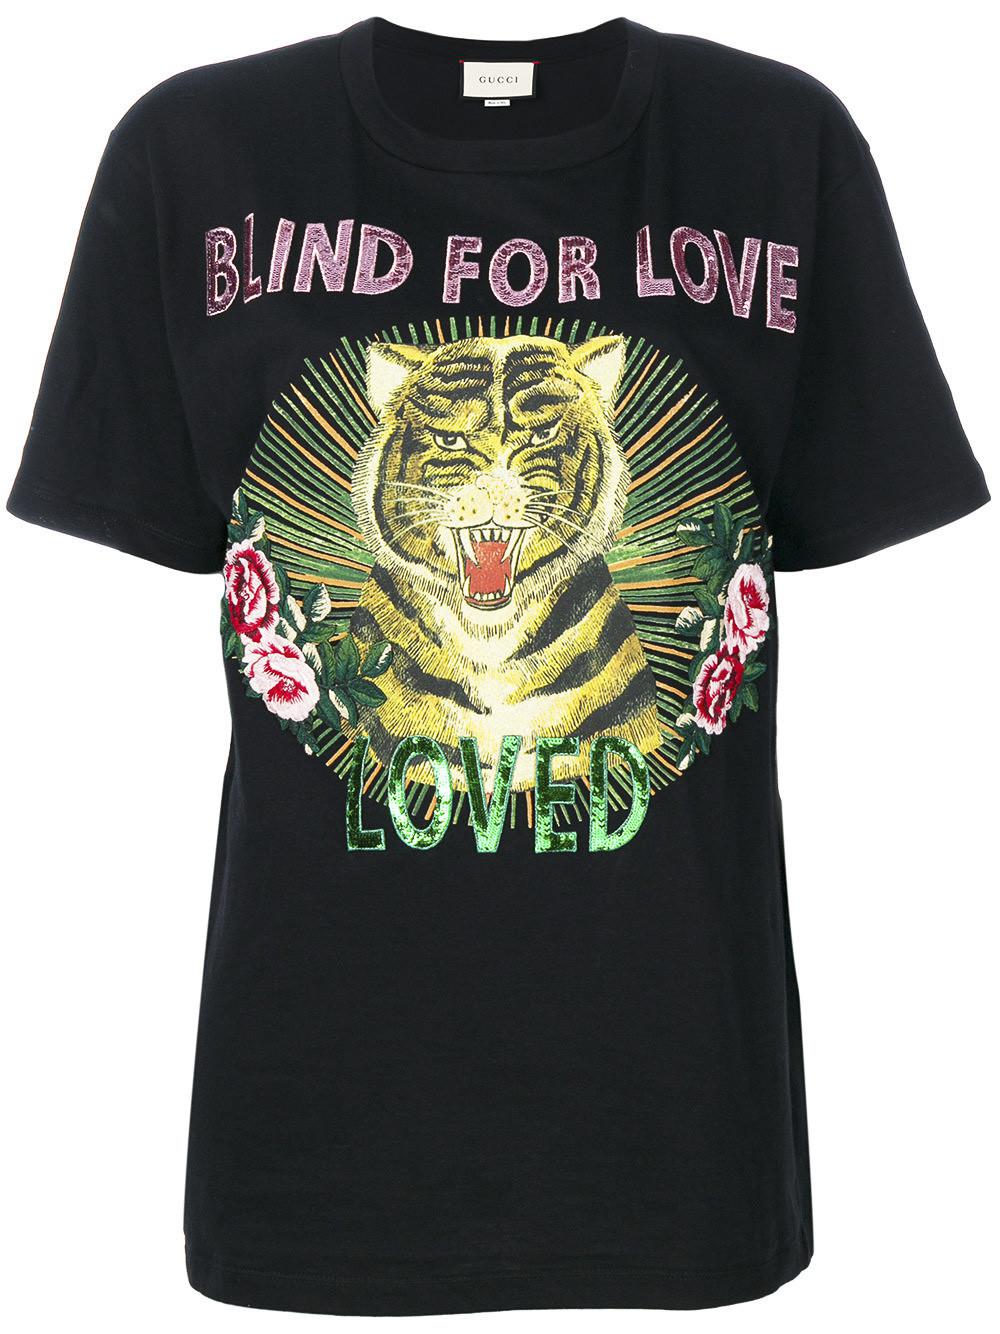 blind for love shirt